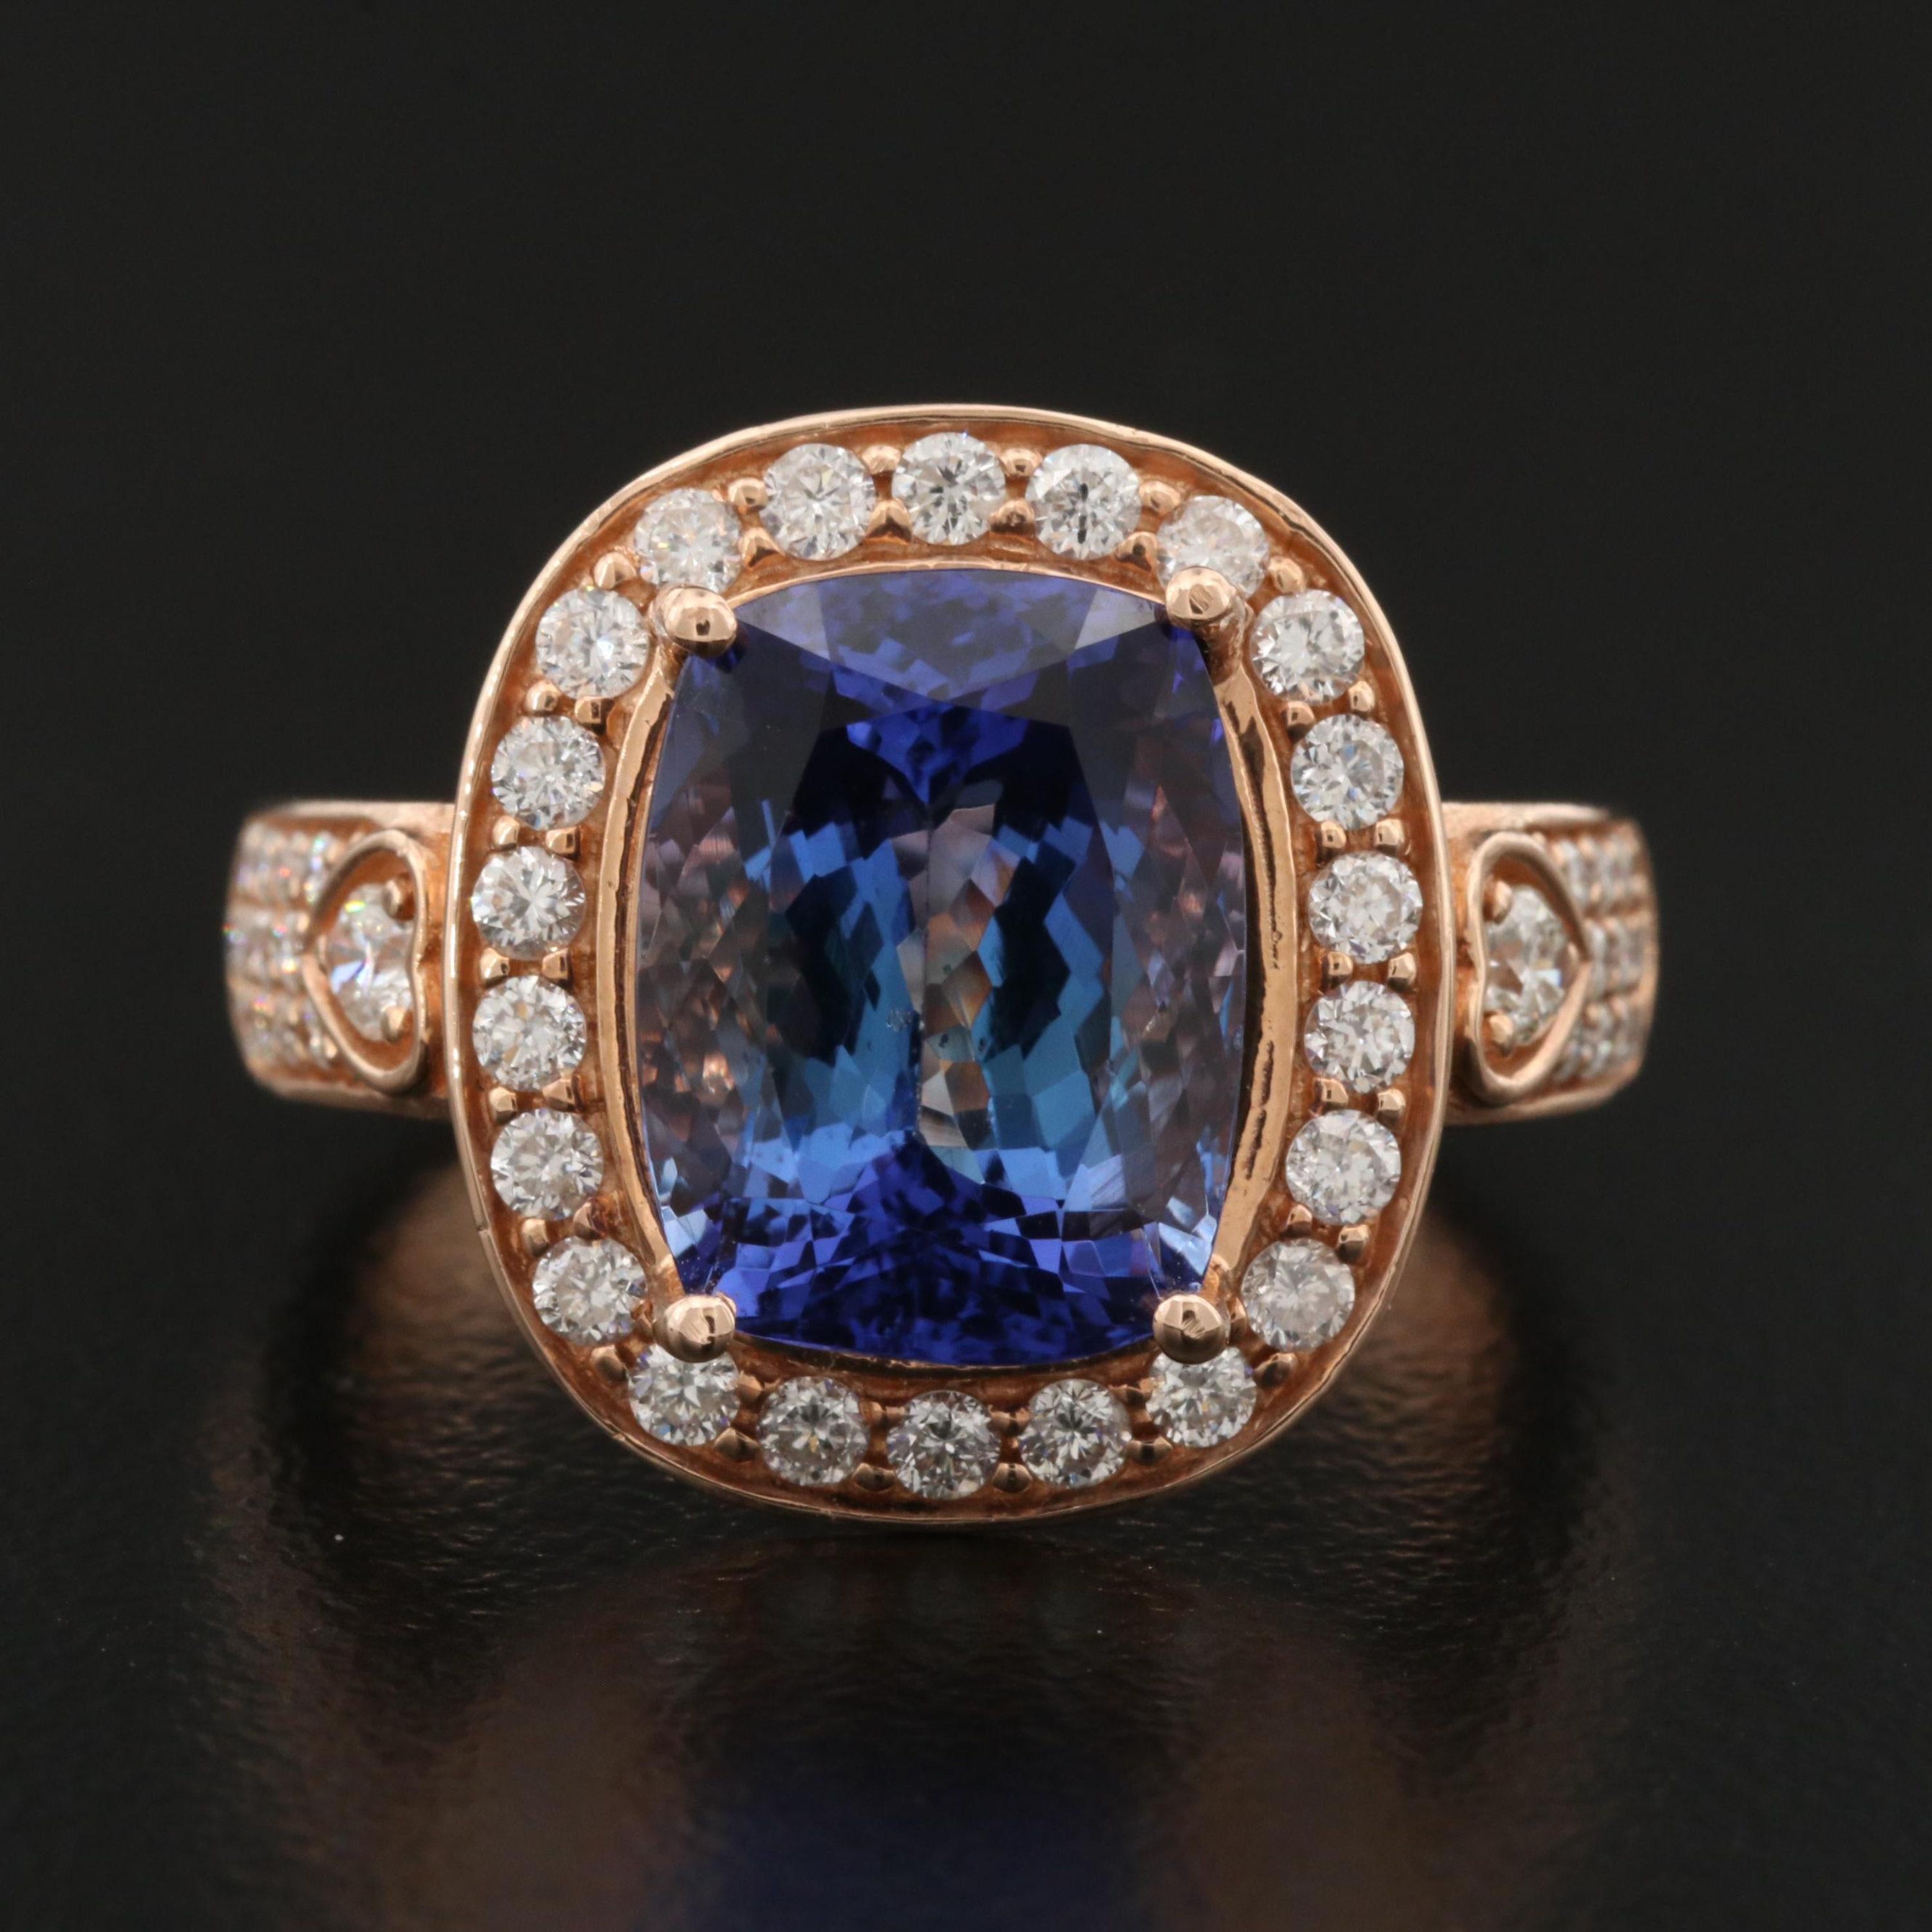 For Sale:  6 Carat Violet Tanzanite Engagement Ring, Halo Diamond Rose Gold Wedding Ring 7